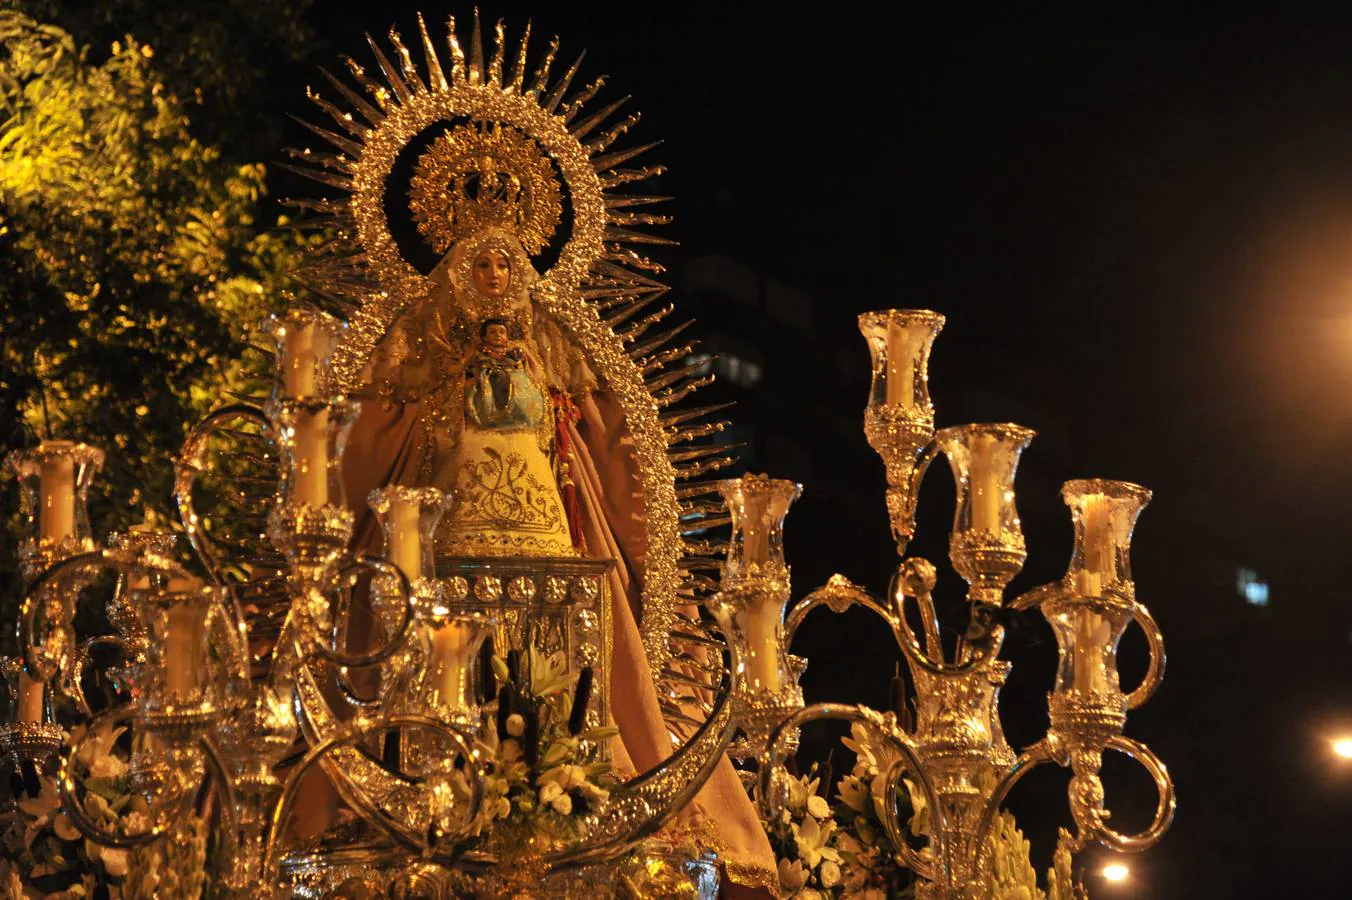 Galería de la procesión de la Virgen del Juncal